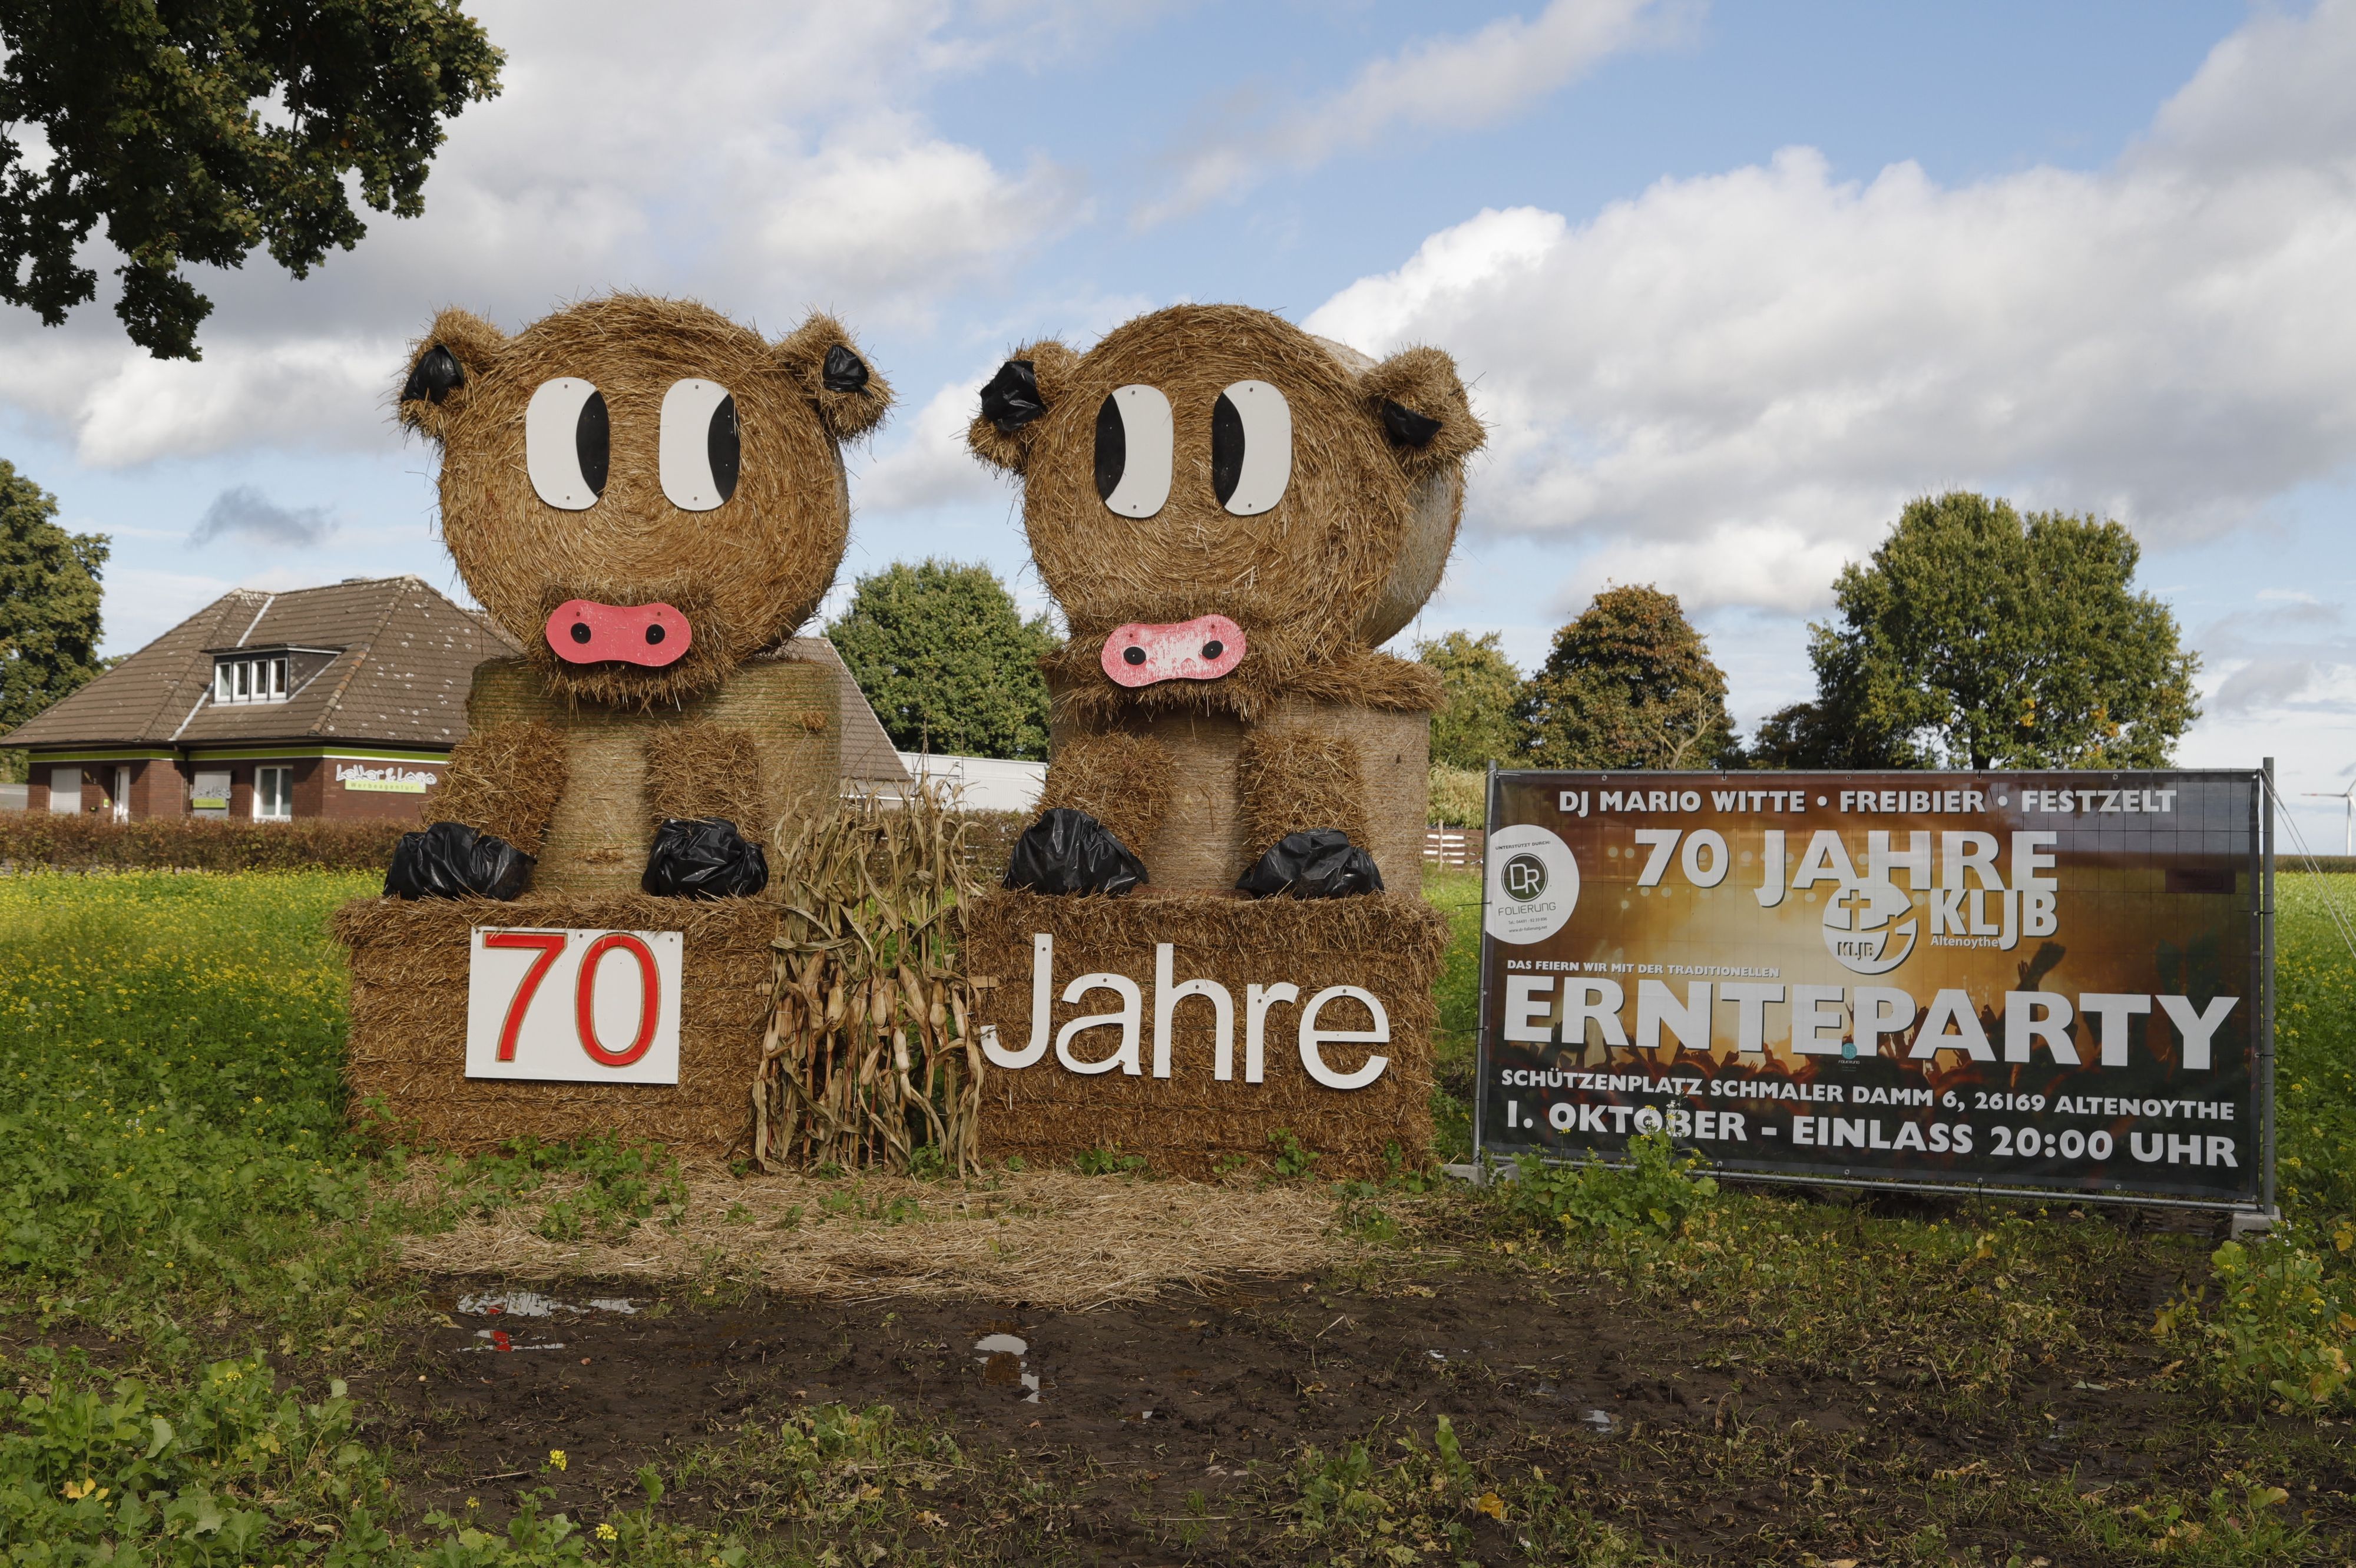 Saustark: Zum 70. Jubiläum feierte die KLJB Altenoythe eine große Ernteparty. Schweine aus Heuballen machen am Ortseingang darauf aufmerksam. Foto: M. Passmann